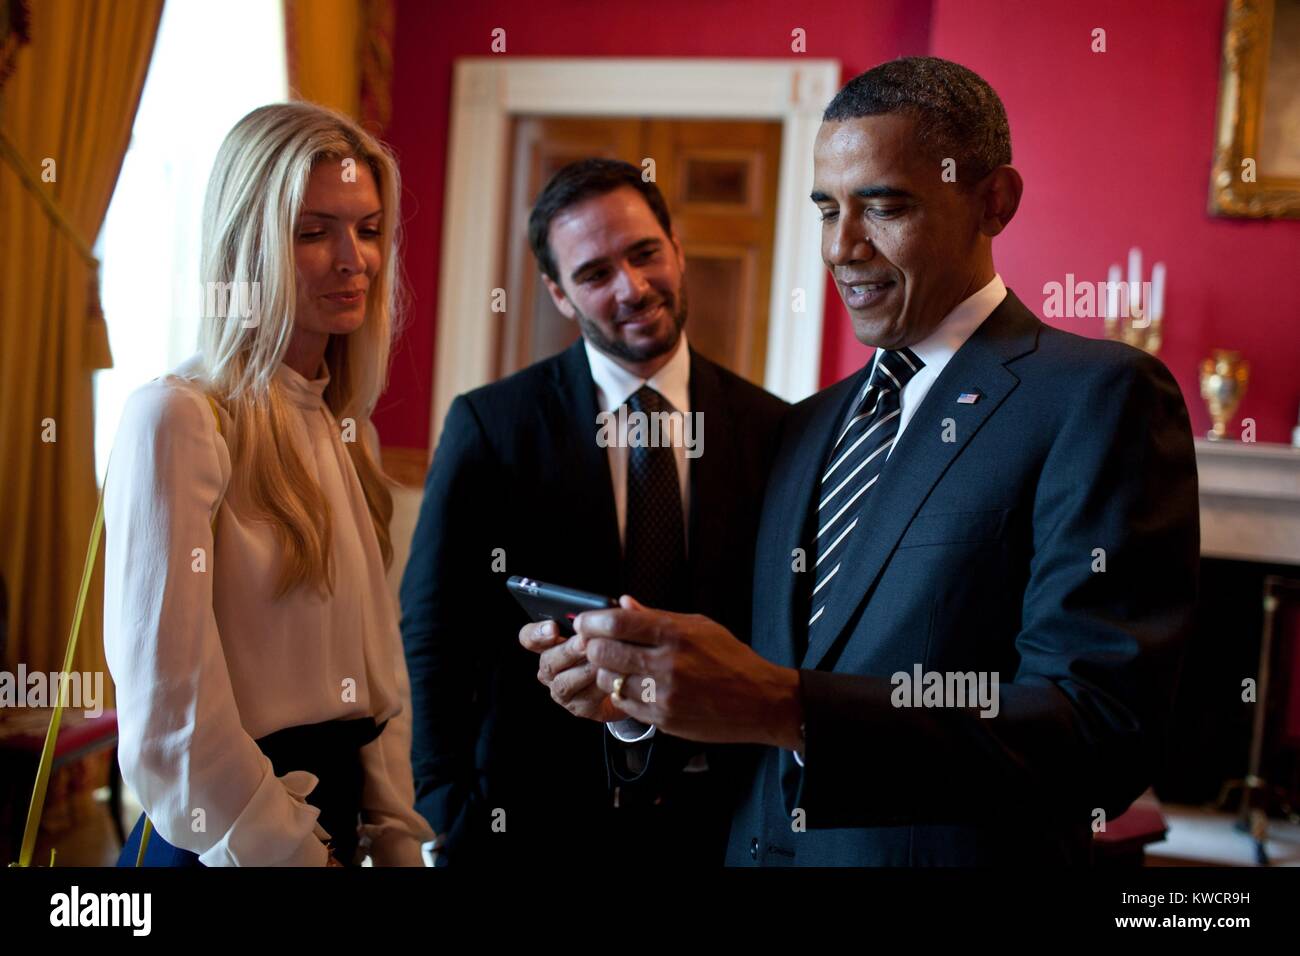 Le président américain Barack Obama avec 2010 Champion de NASCAR Jimmie Johnson et sa femme, Chandra. Salle Rouge de la Maison Blanche, 7 septembre 2011 (BSLOC 2015 3 137) Banque D'Images